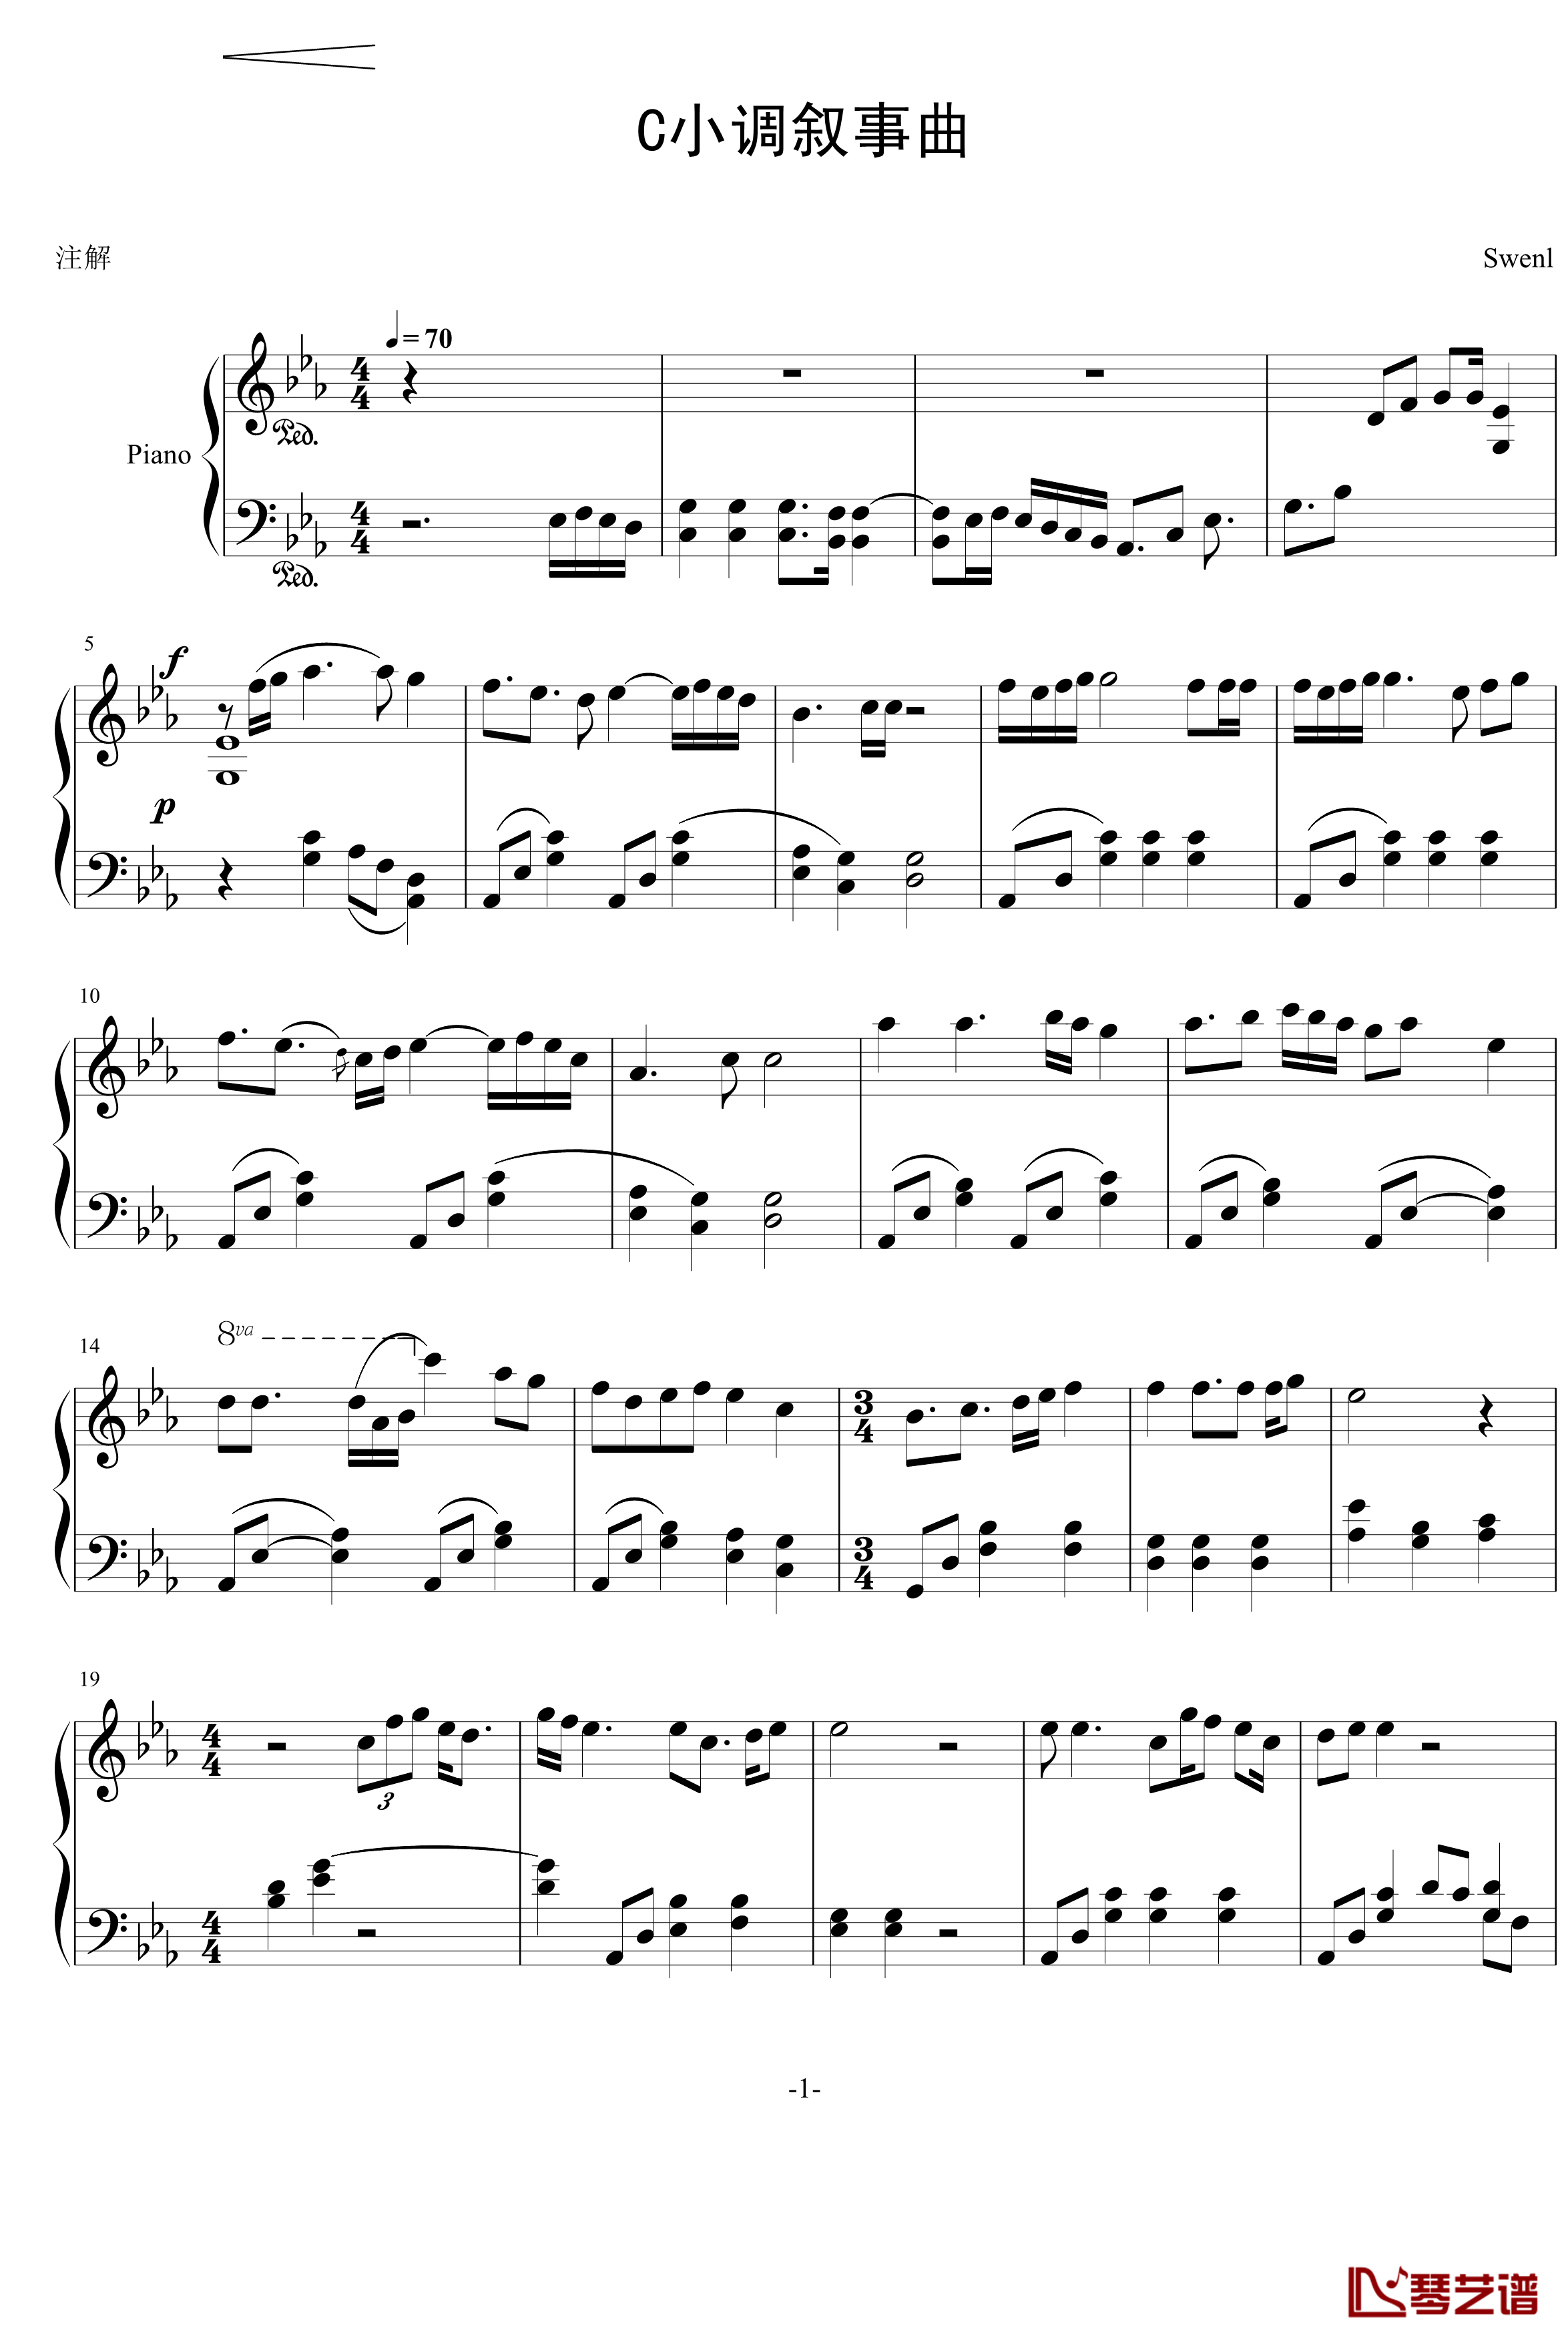 C小调叙事曲钢琴谱-swenl1